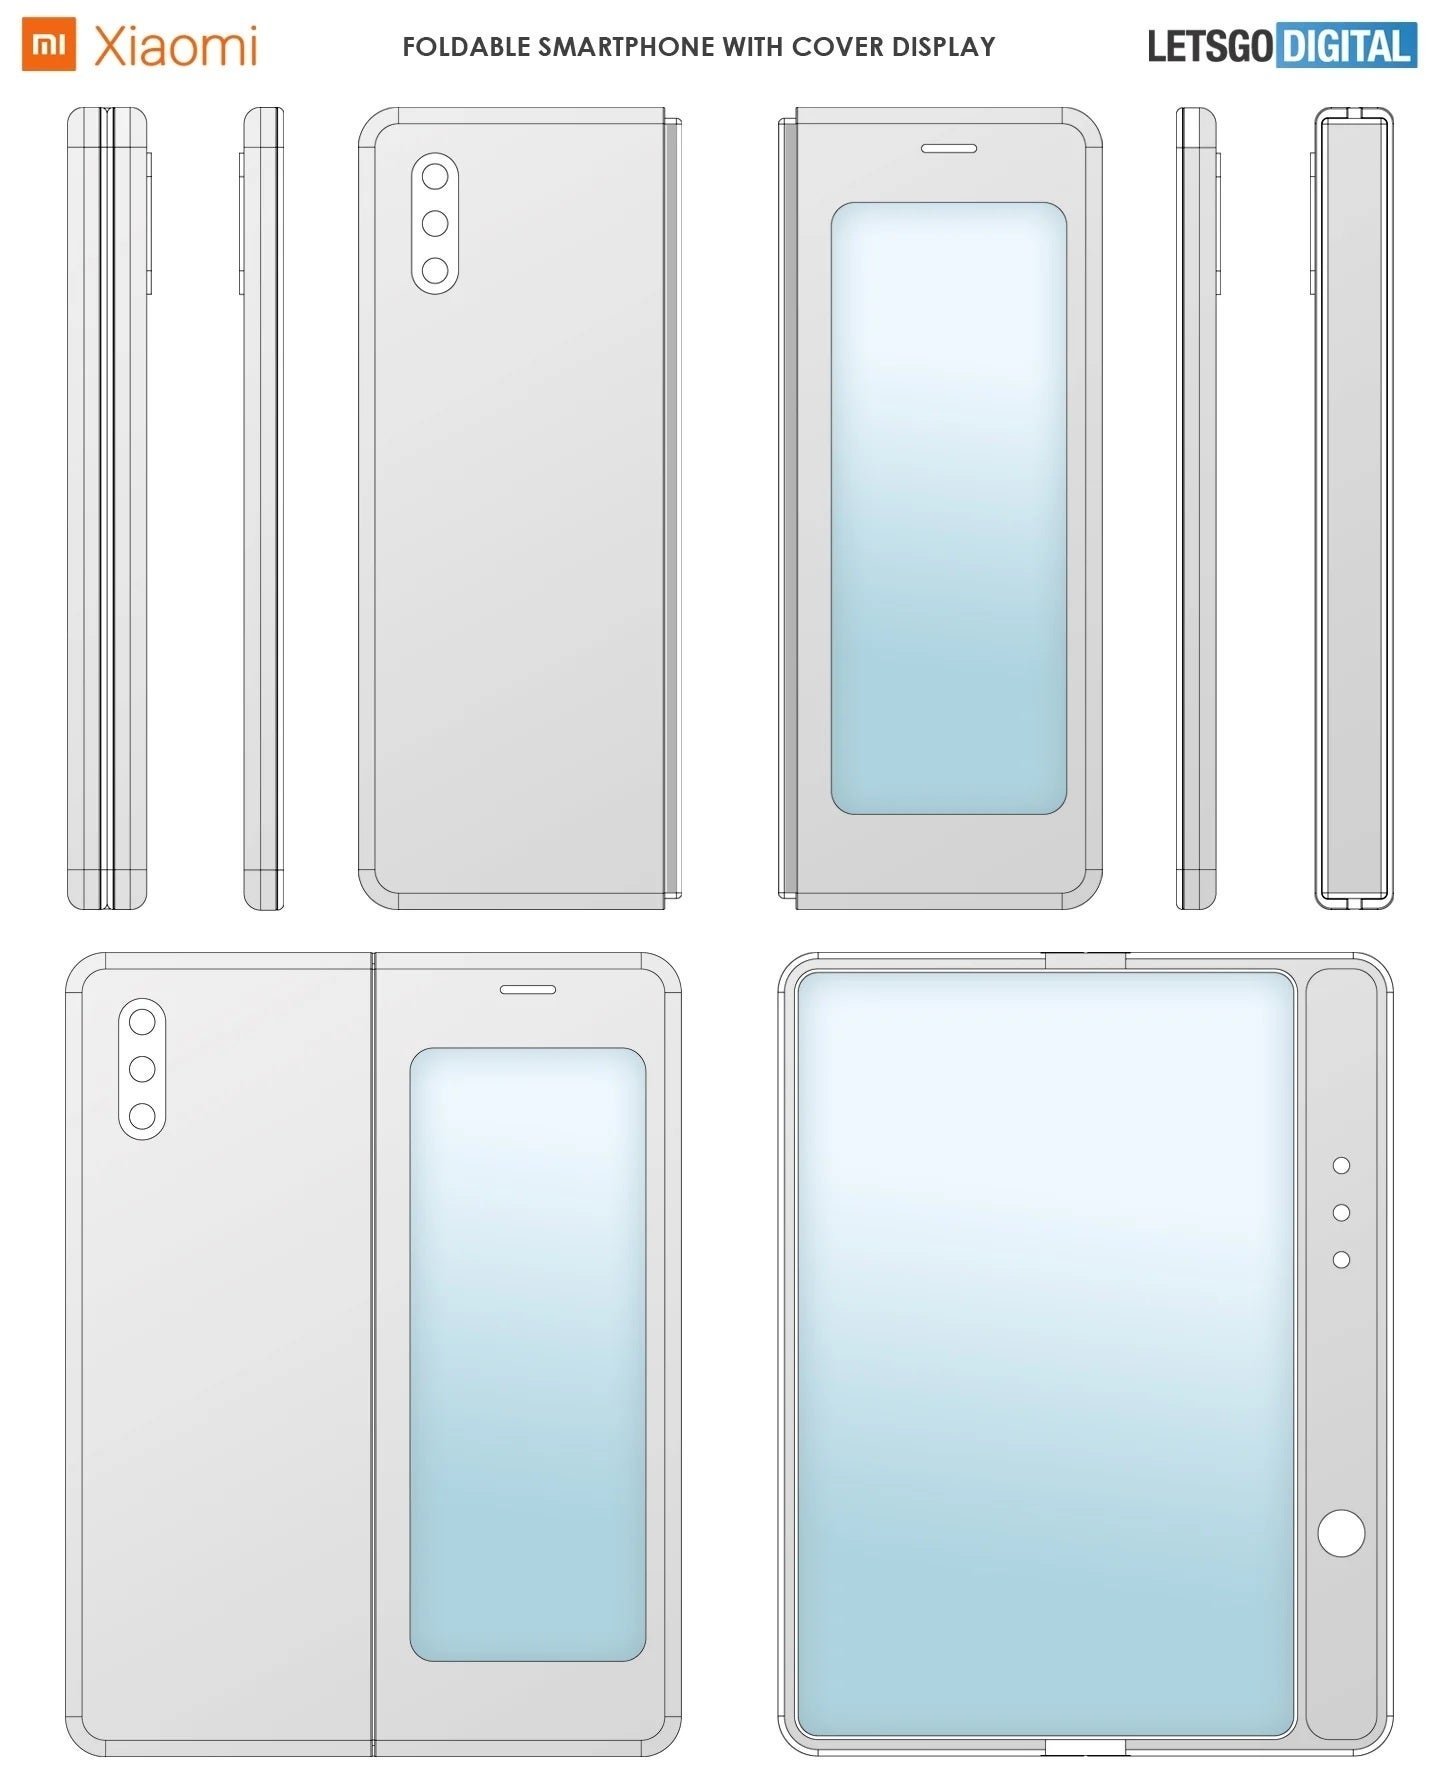 El Samsung Galaxy Fold de Xiaomi